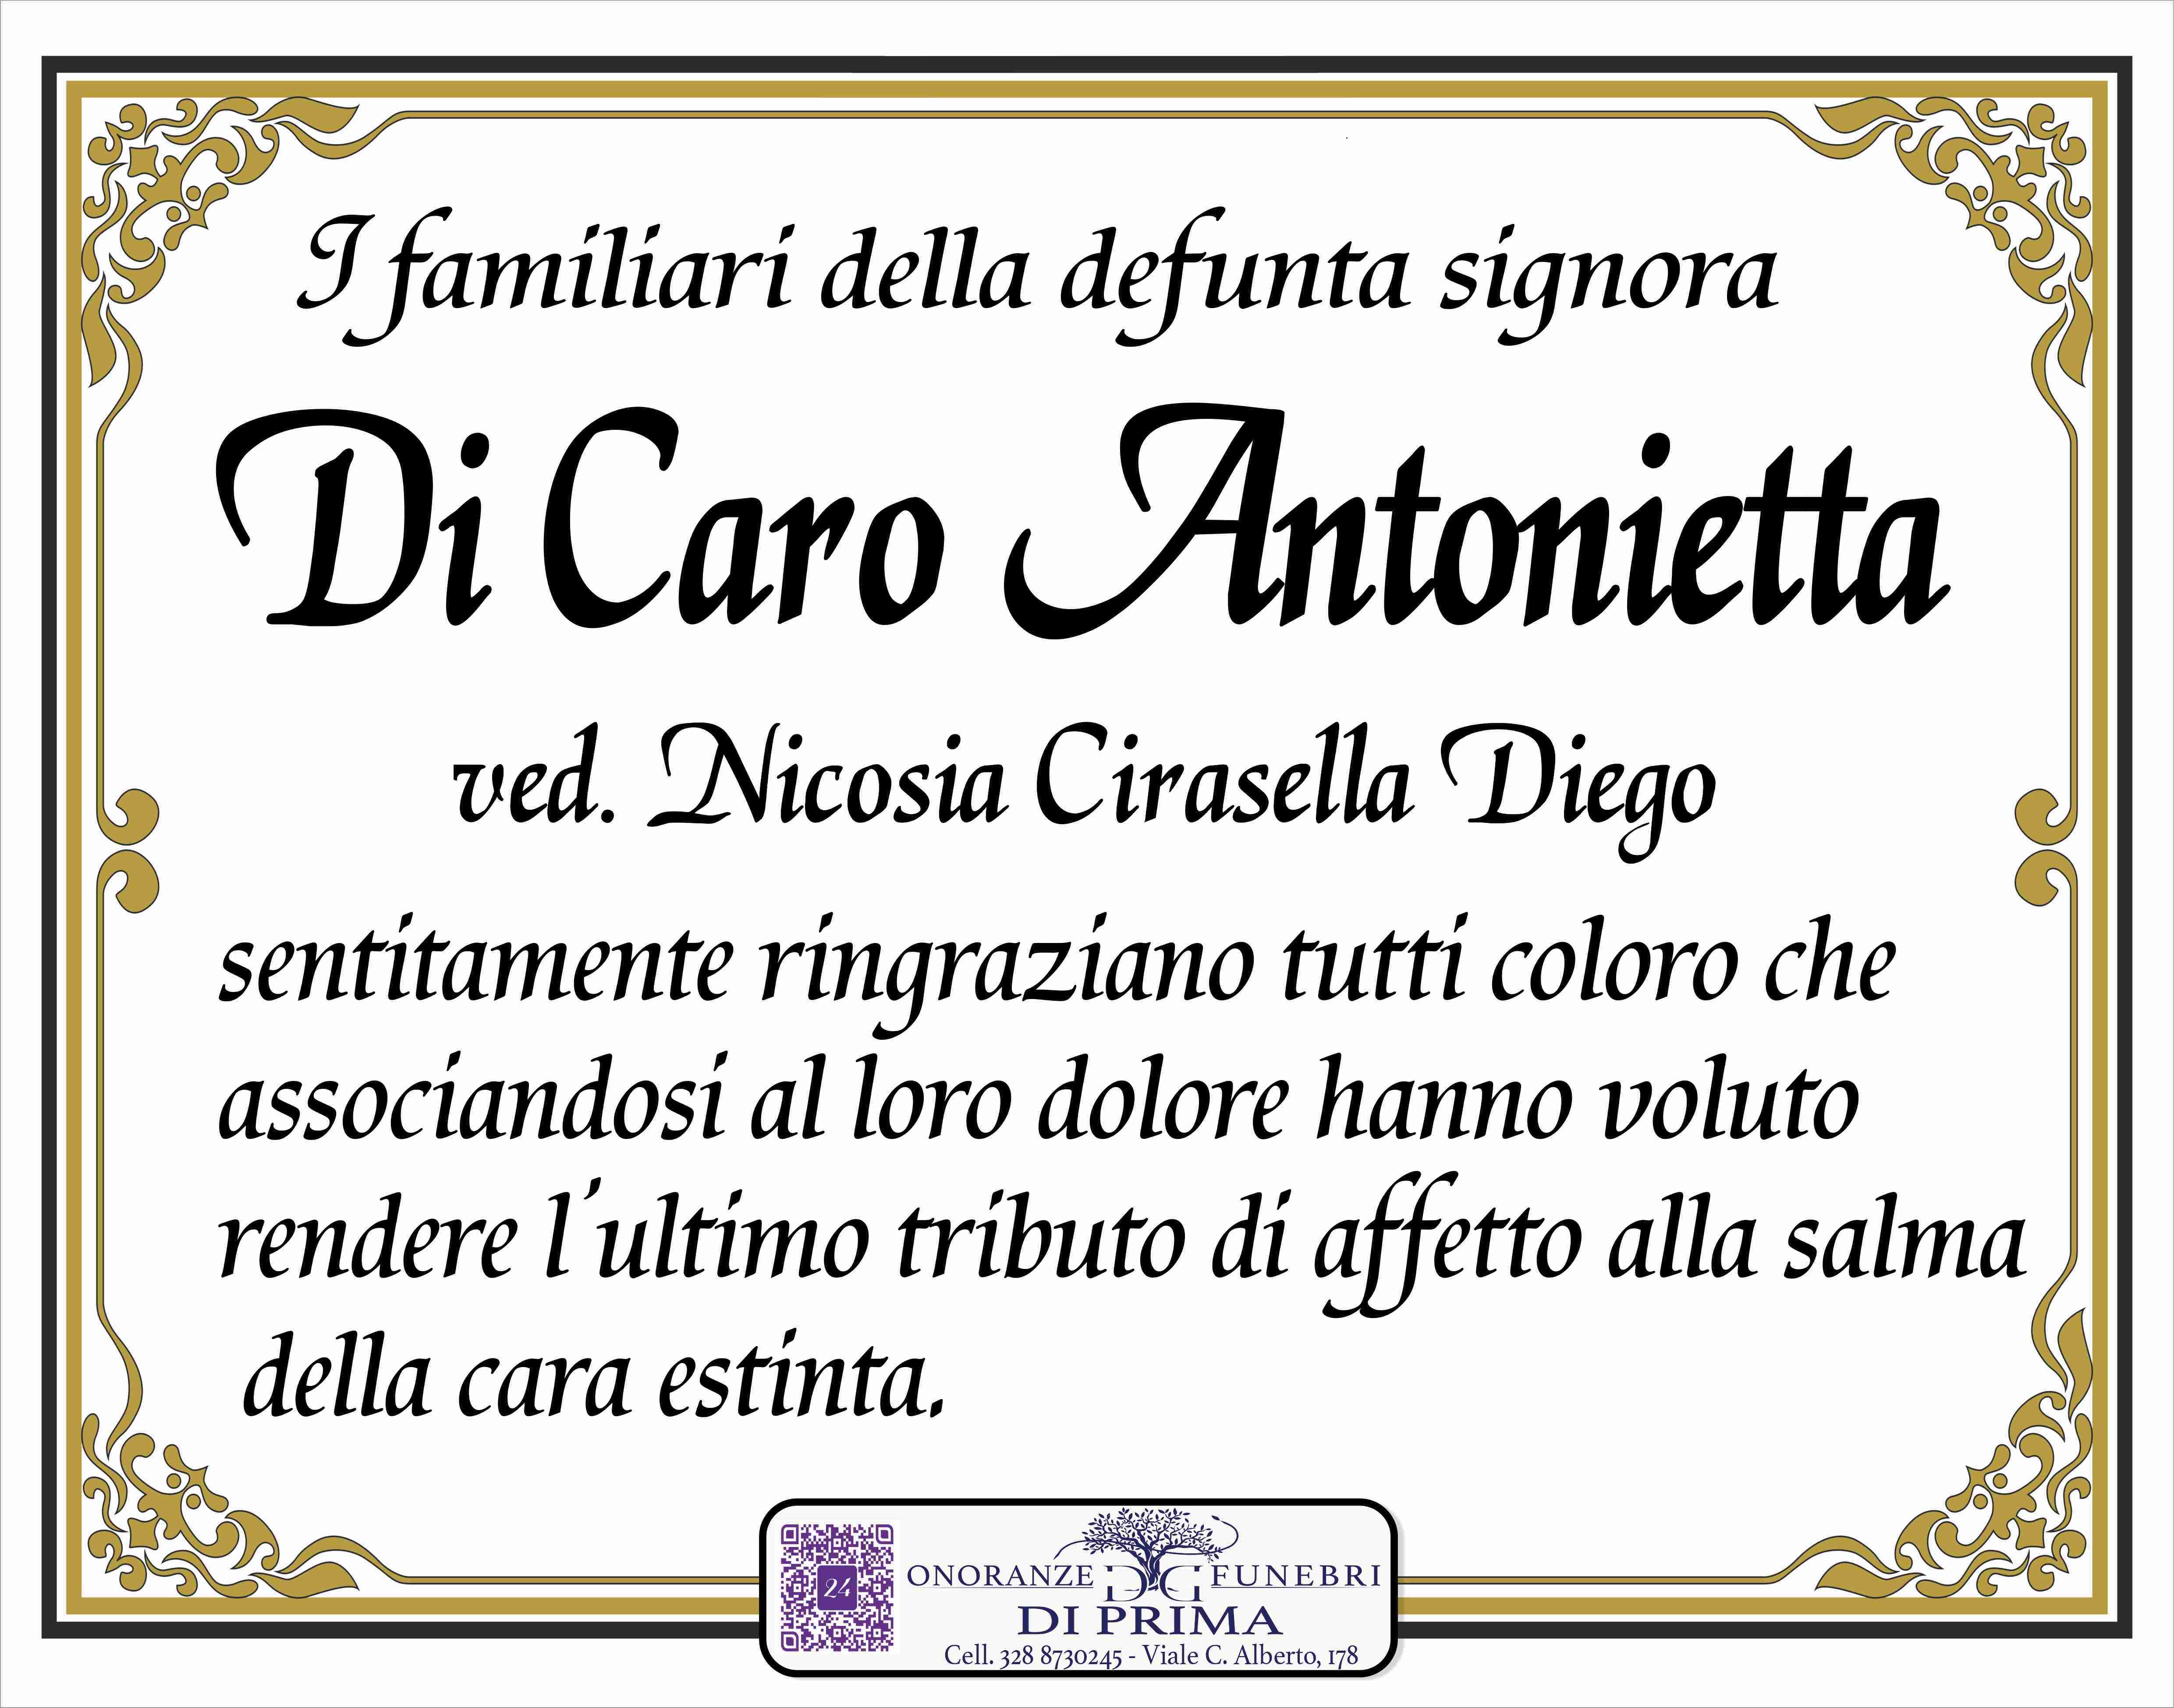 Antonietta Di Caro